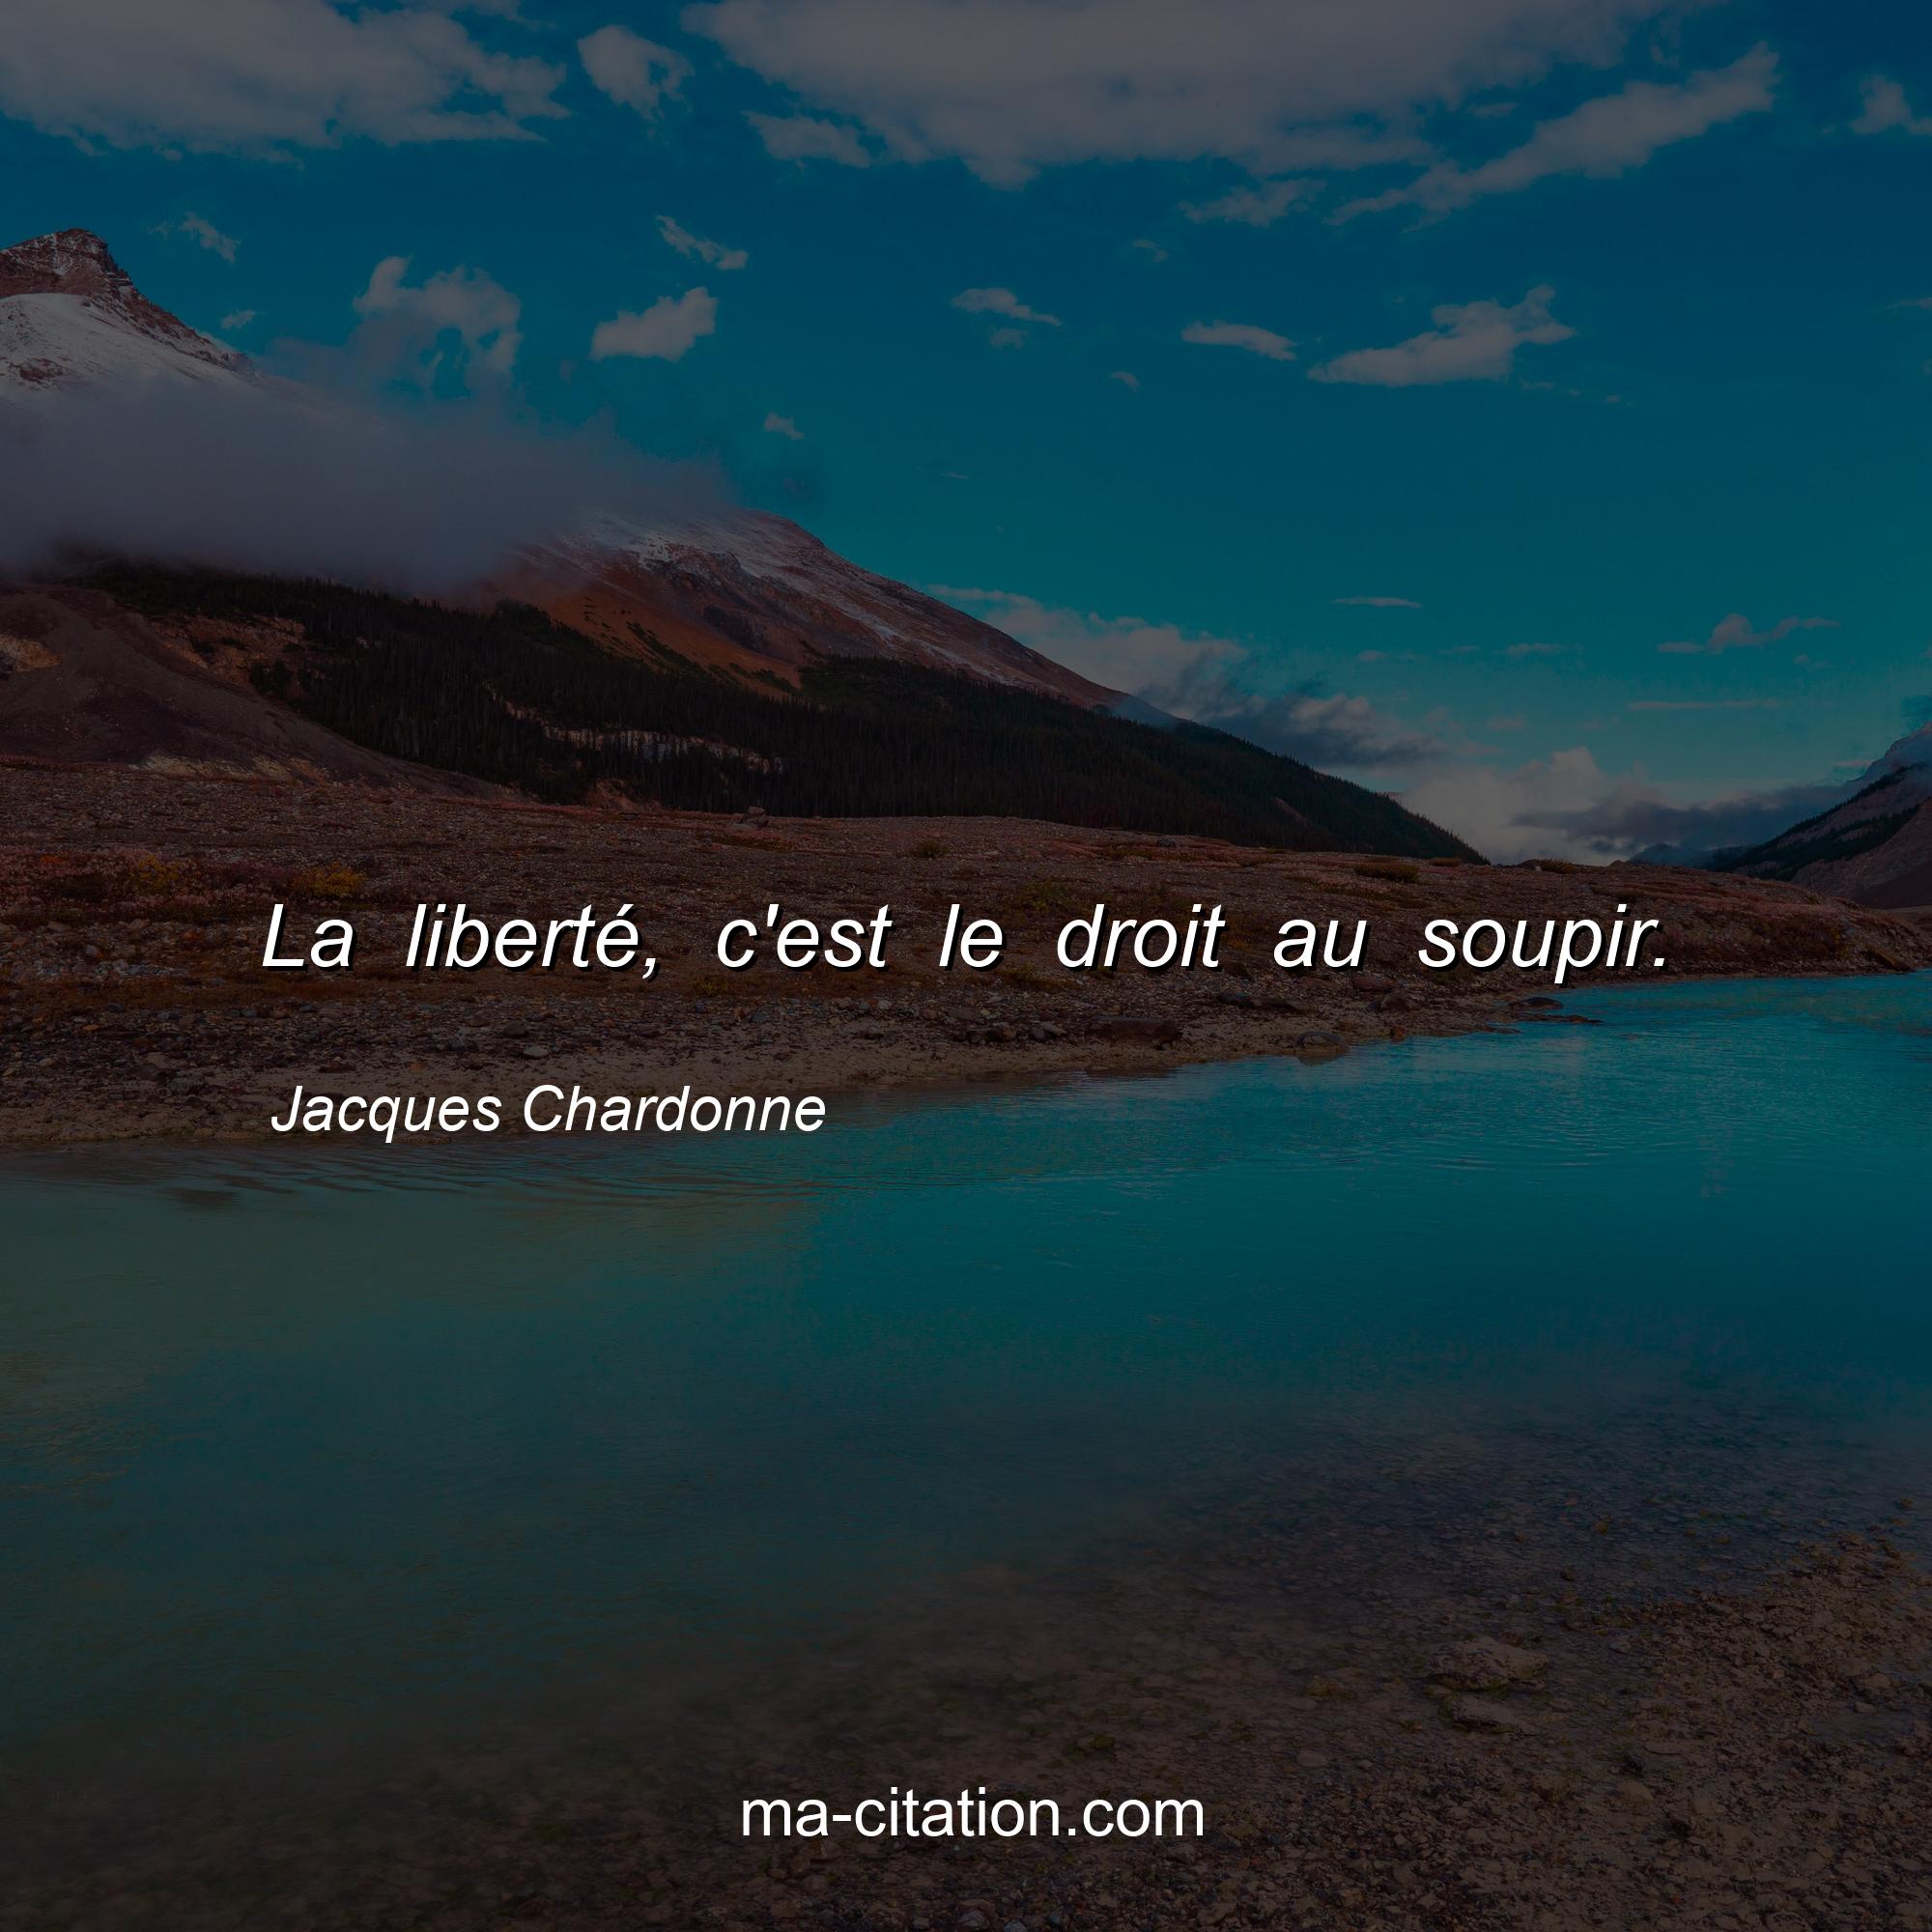 Jacques Chardonne : La liberté, c'est le droit au soupir.